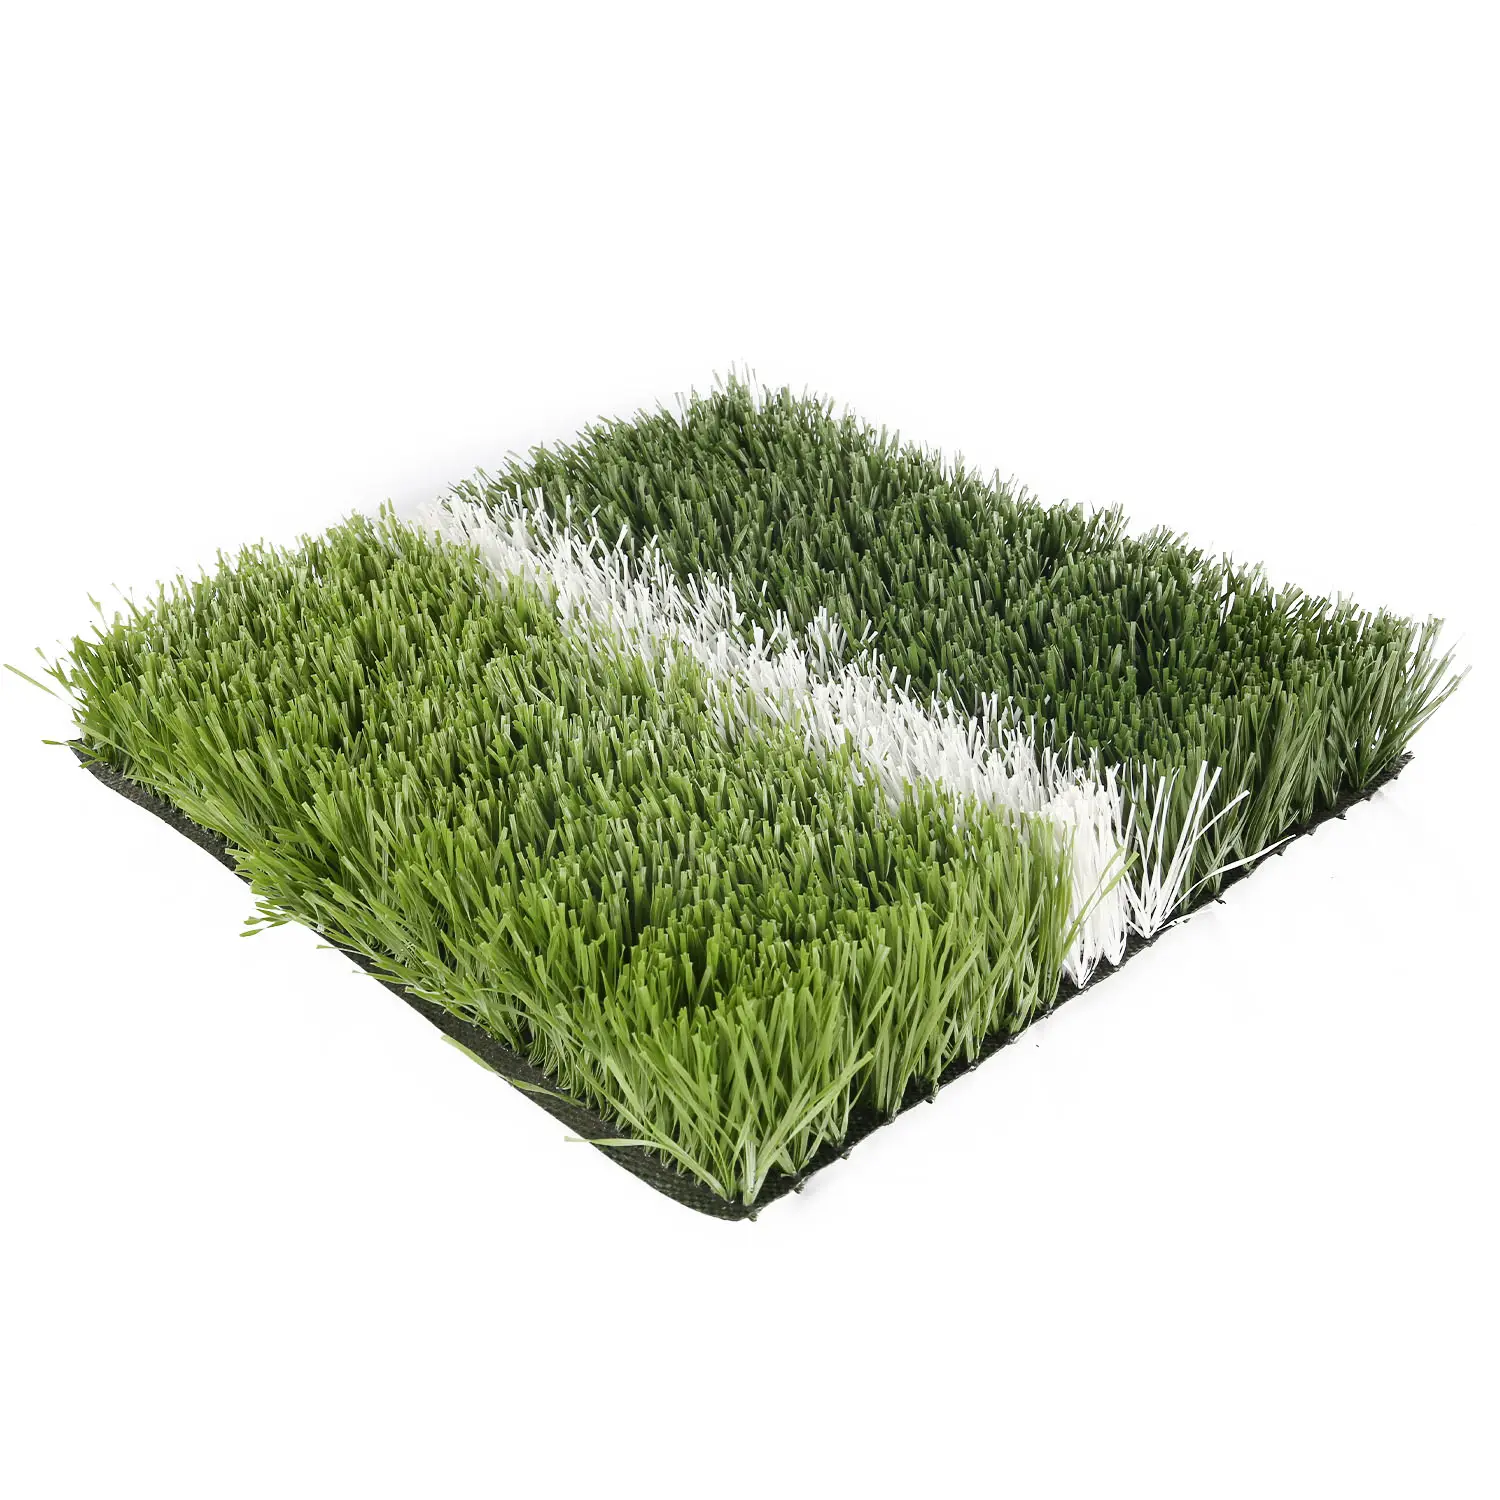 30 мм высокая плотность синтетический газон УФ-сопротивление Спортивная трава оптовая продажа 5v5 футбольная искусственная трава